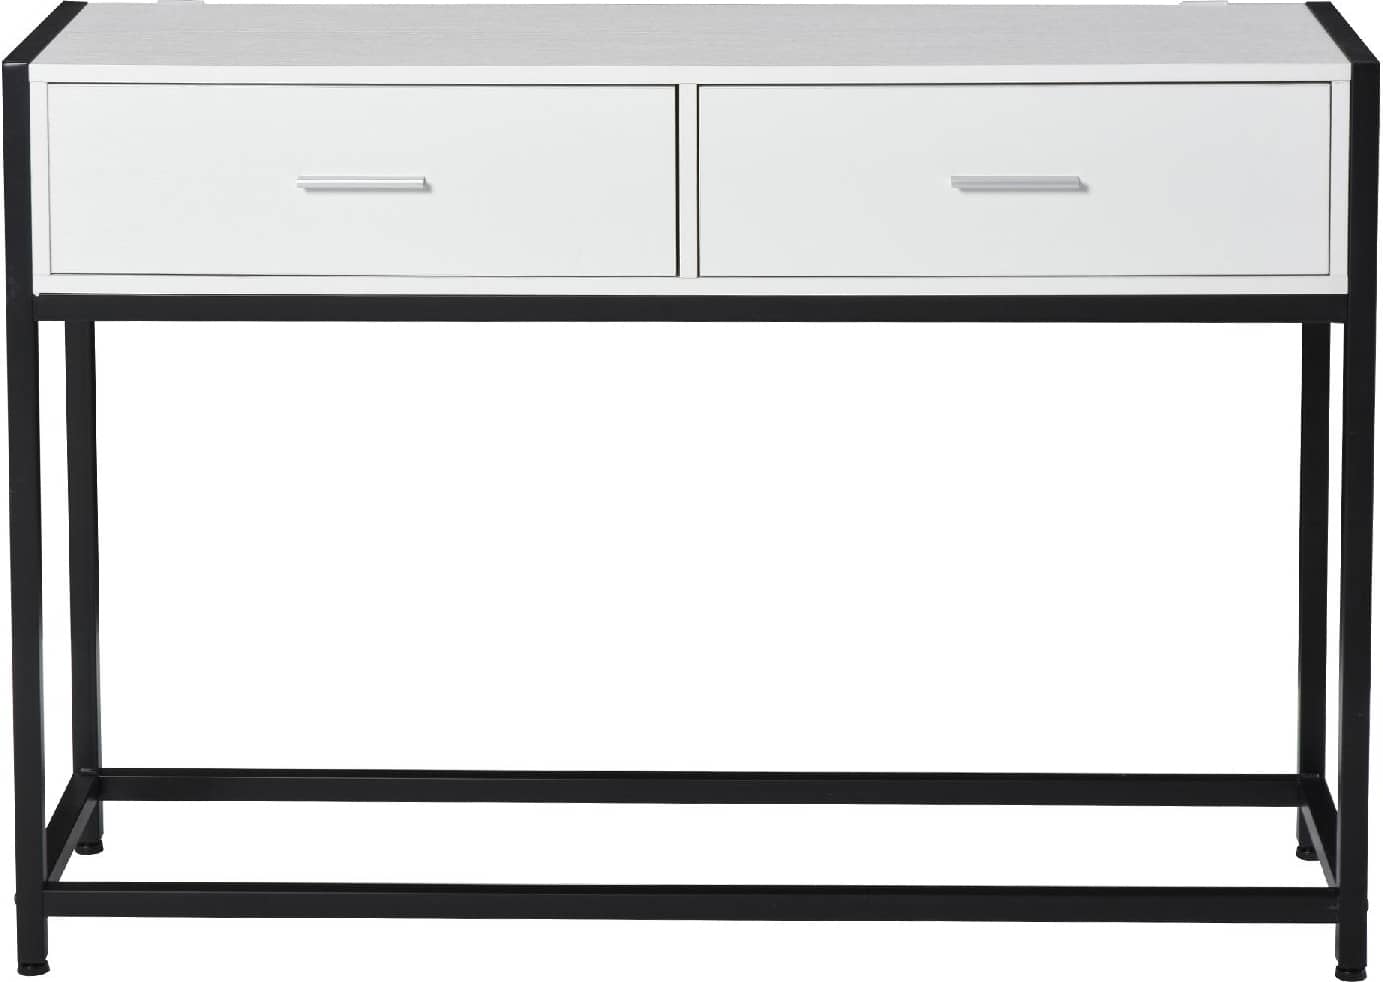 dechome 837055 tavolo consolle per ingresso con 2 cassetti in legno bianco e metallo nero - 837055